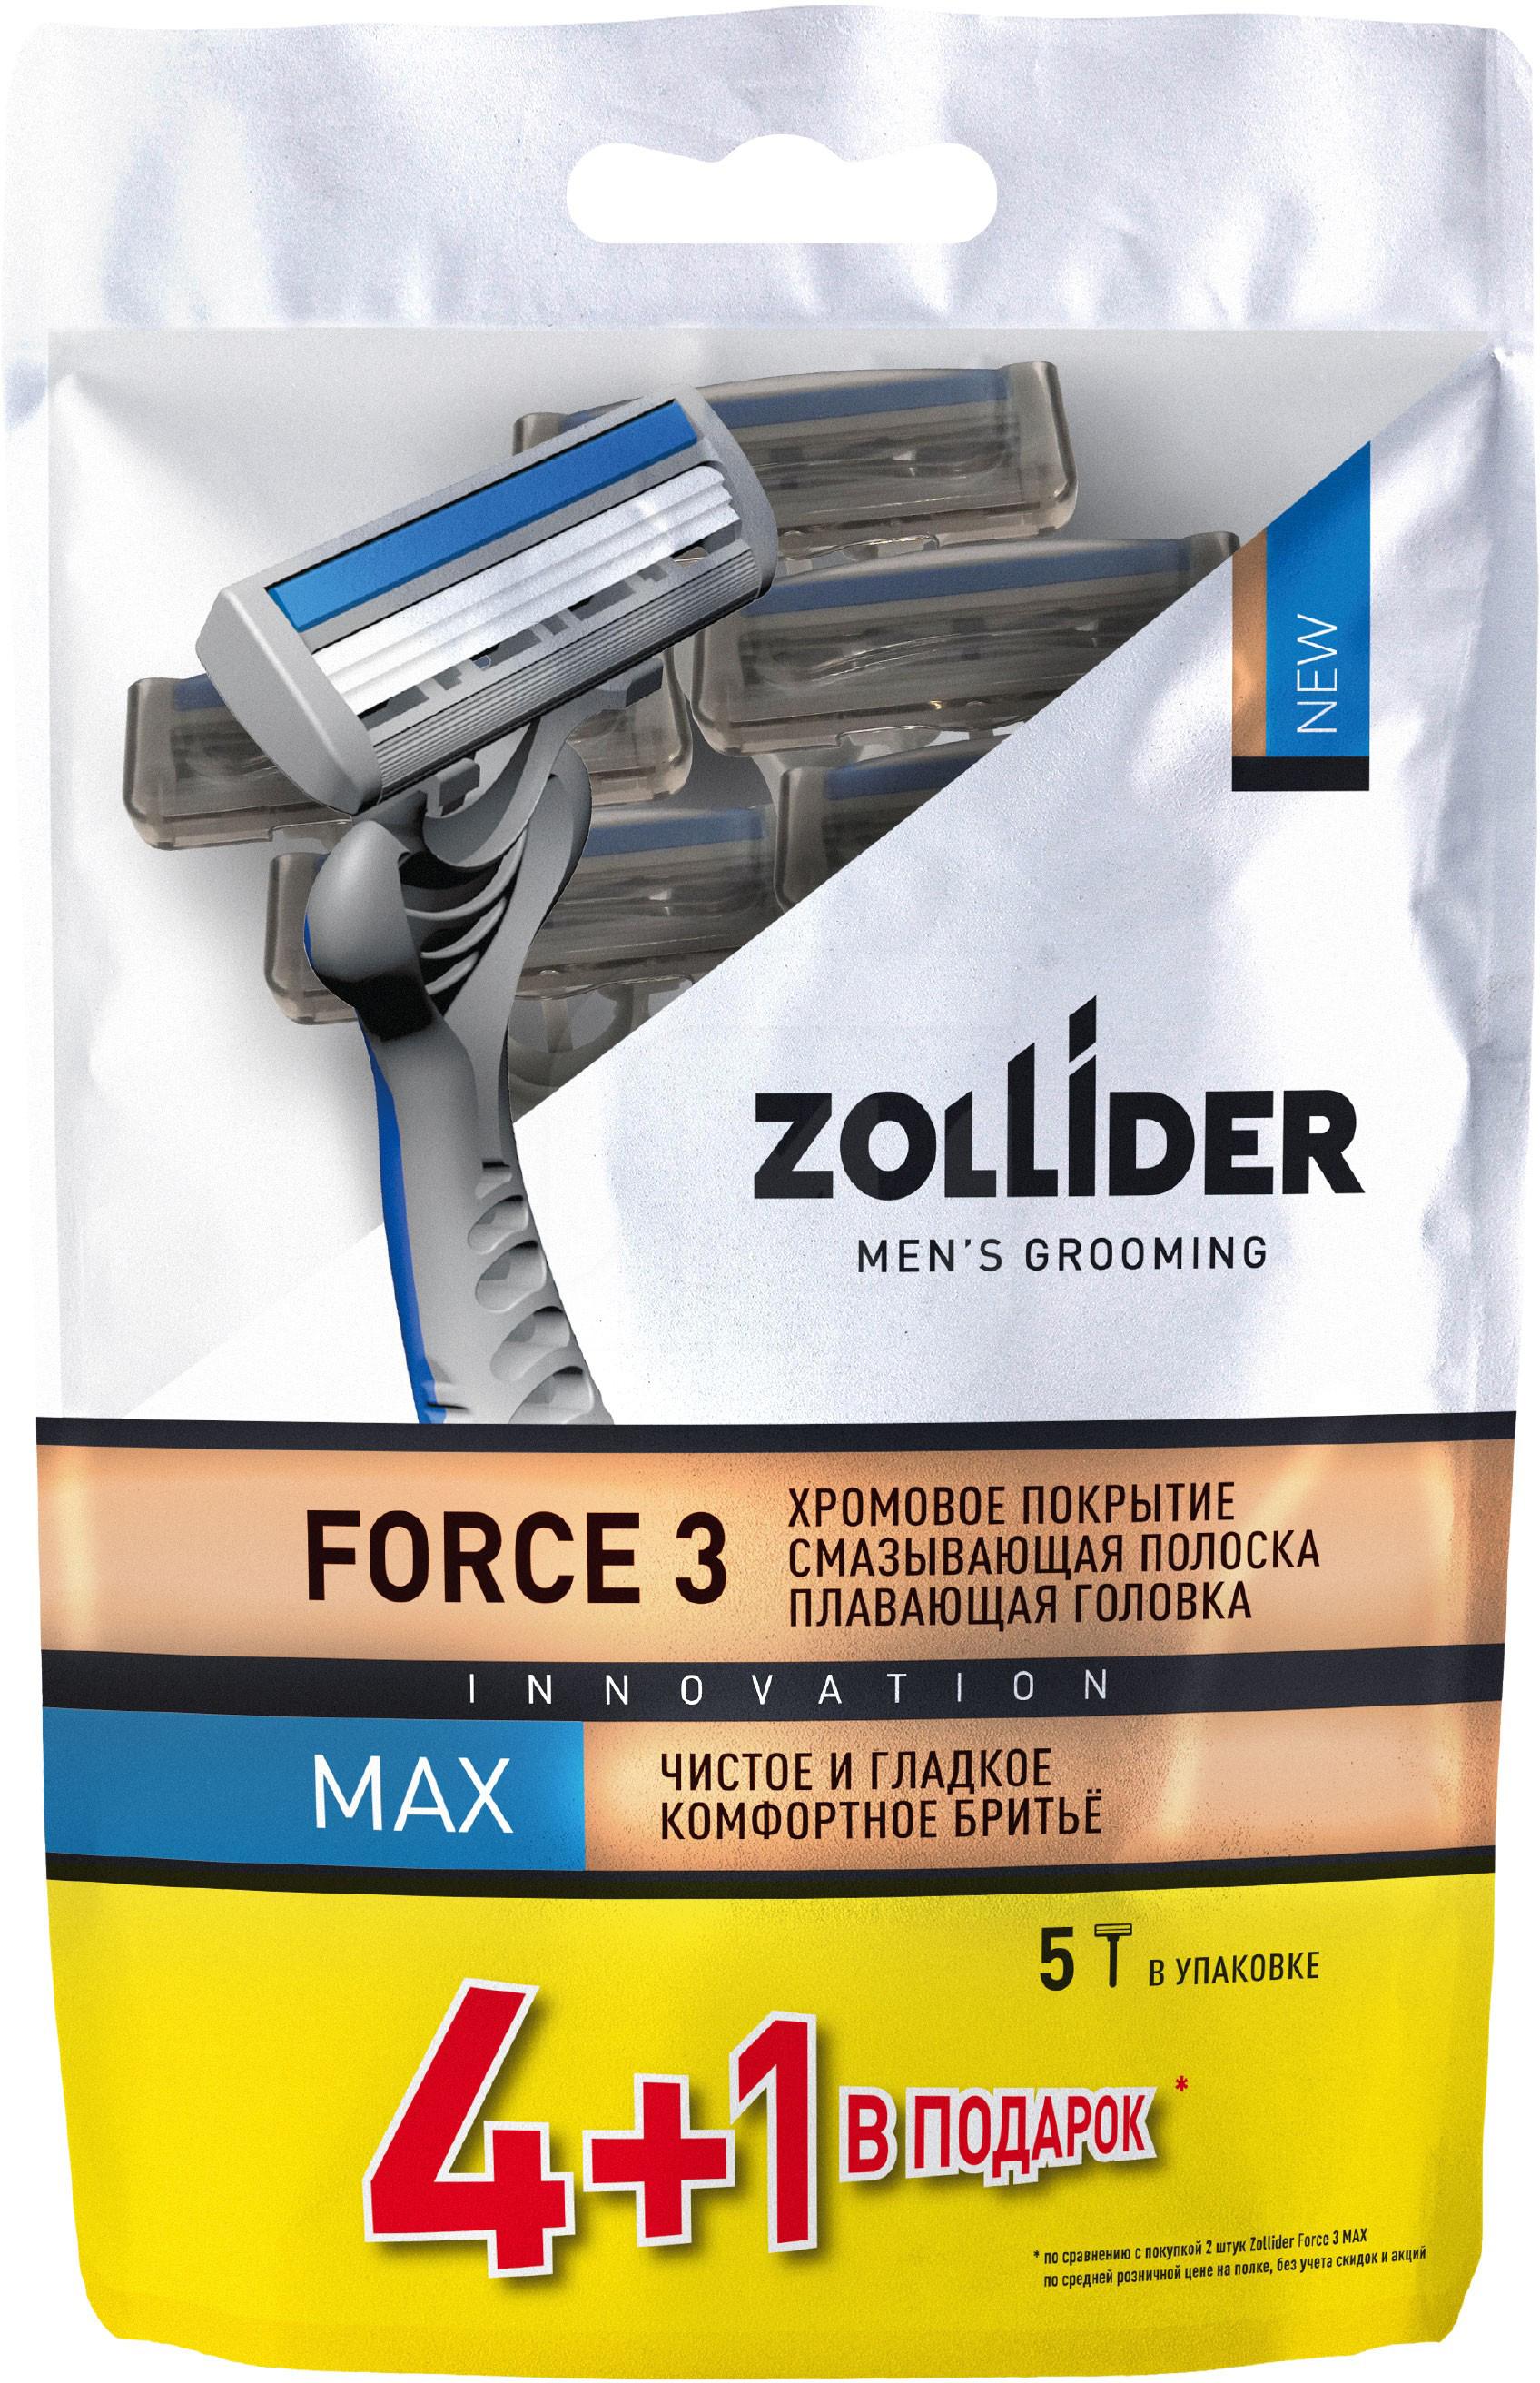 Бритвенные станки мужские Zollider Force 3 Max одноразовые с тройными лезвиями 4 + 1 шт gillette2 станки одноразовые для бритья 7 3 шт